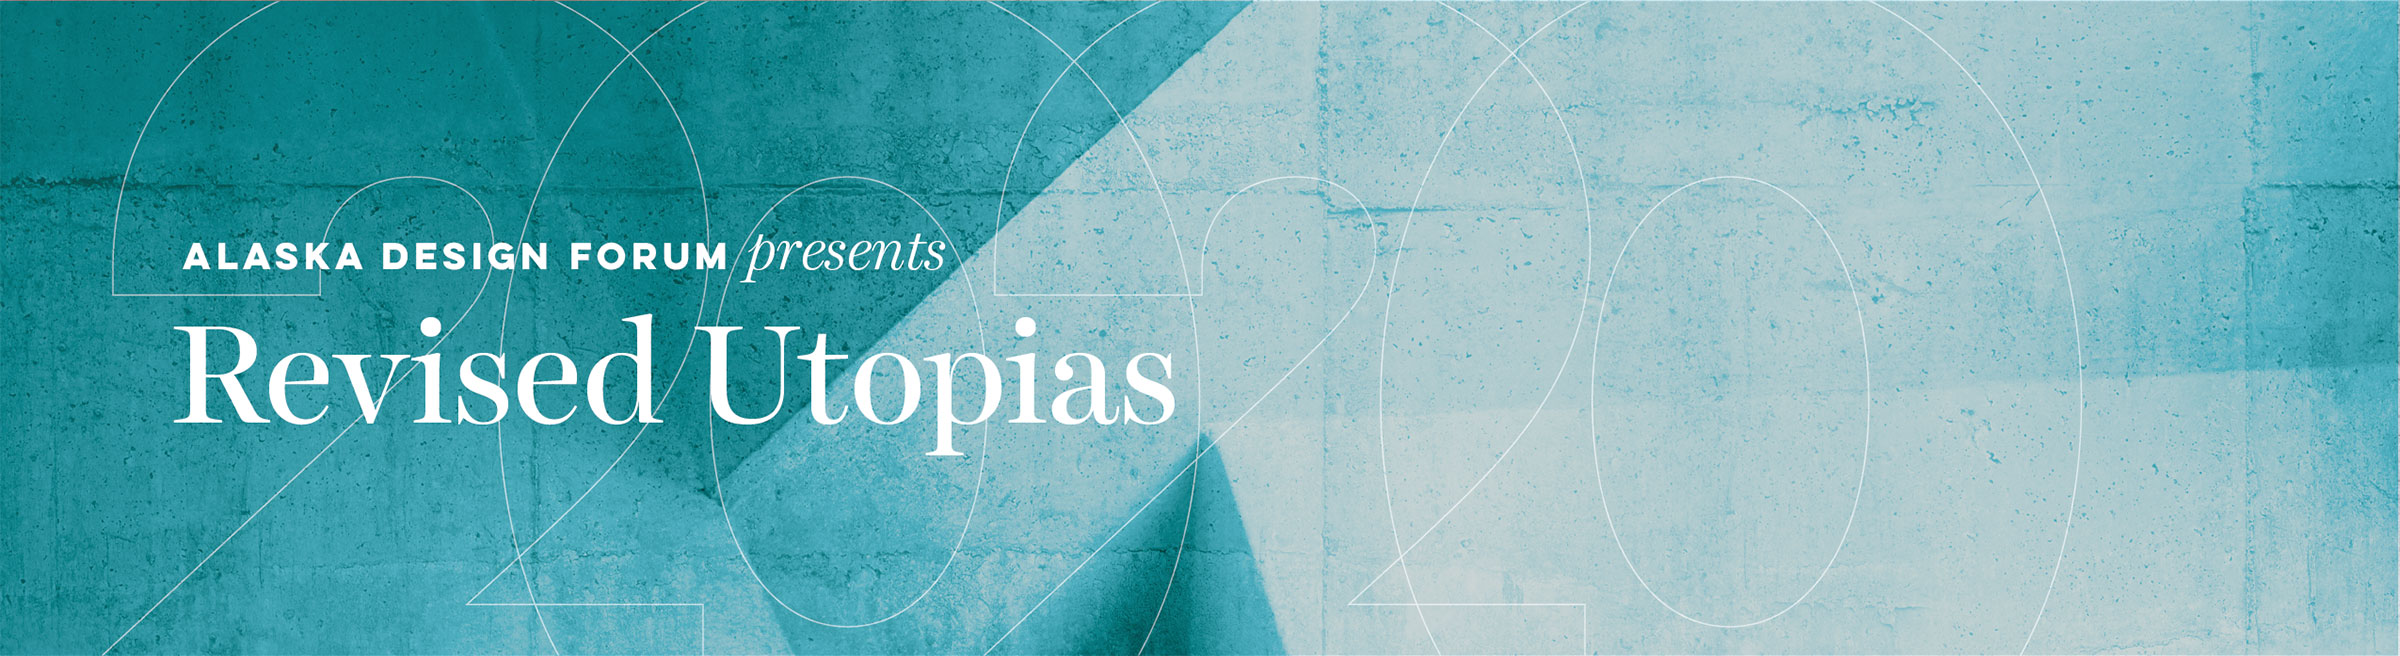 Revised Utopias: 2020 lecture series